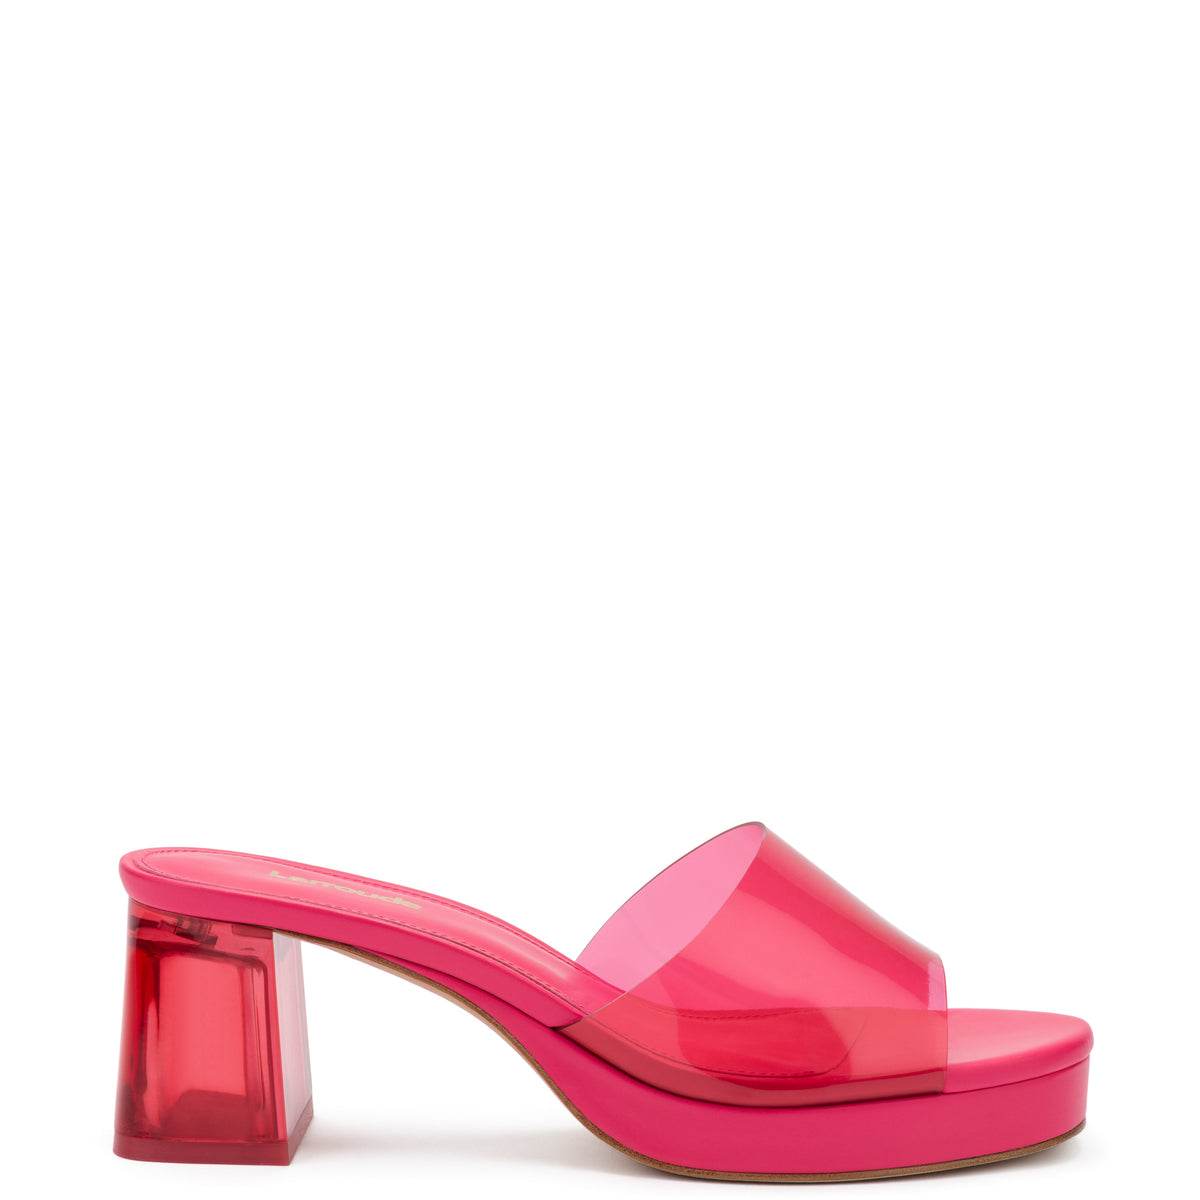 Women's Premium Sandals, Flats and Boots | Larroudé Shoes - Larroude